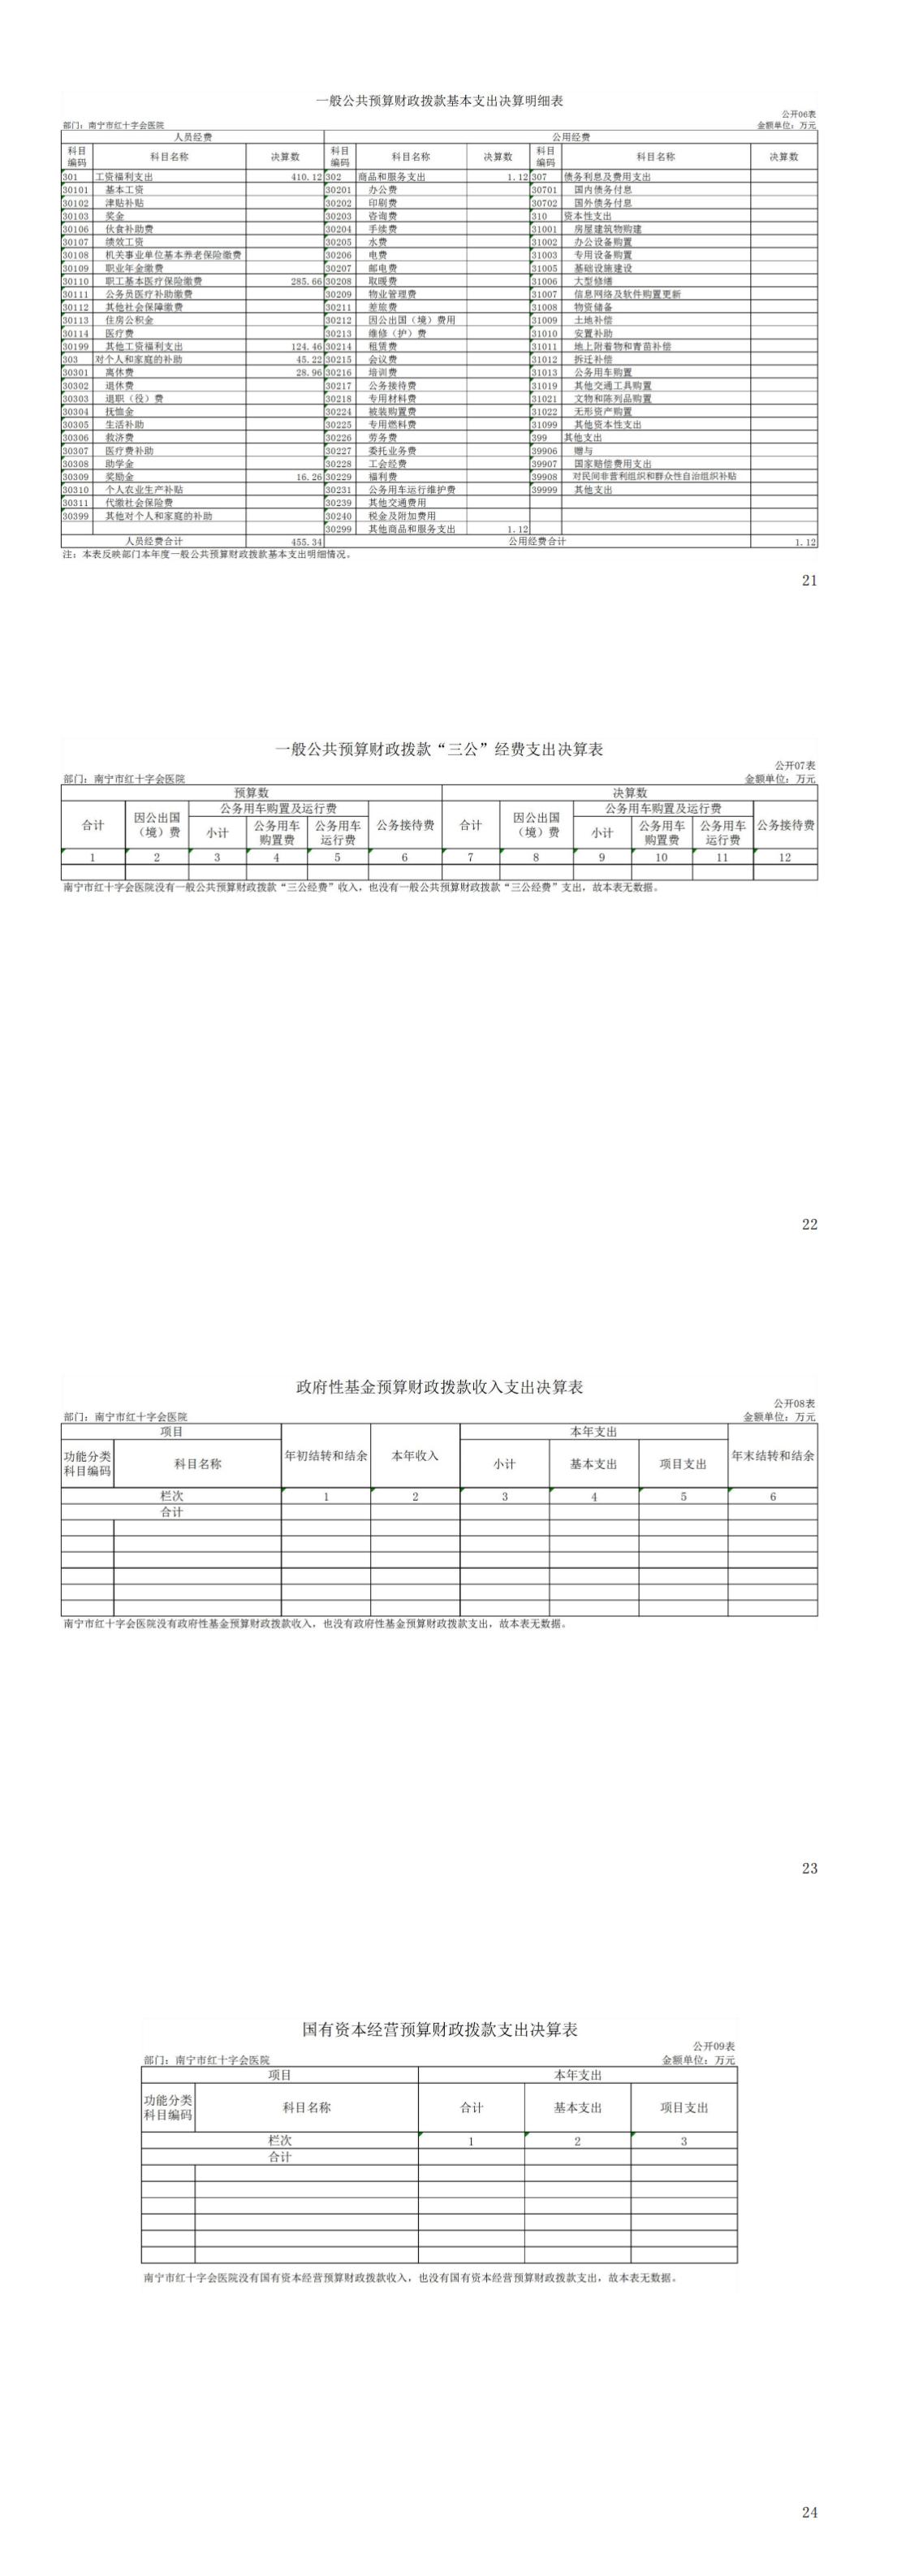 308010南宁市红十字会医院2021年度部门决算公开_00.jpg